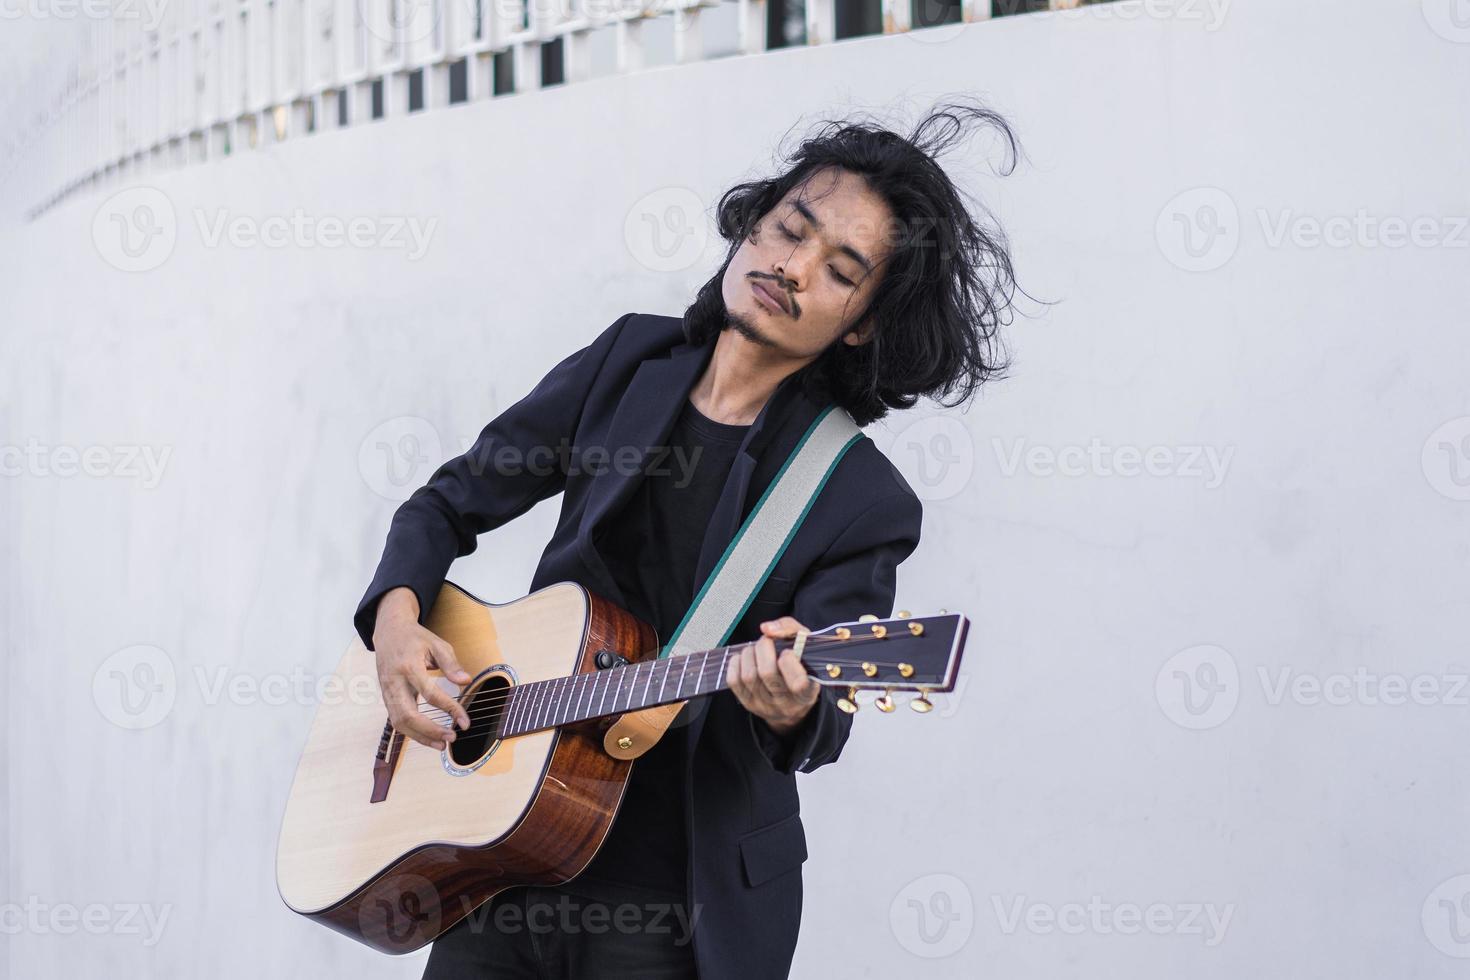 portretten man houdt gitaar spelen muziekfestival buiten, lifestyle mode muziek straat buiten foto